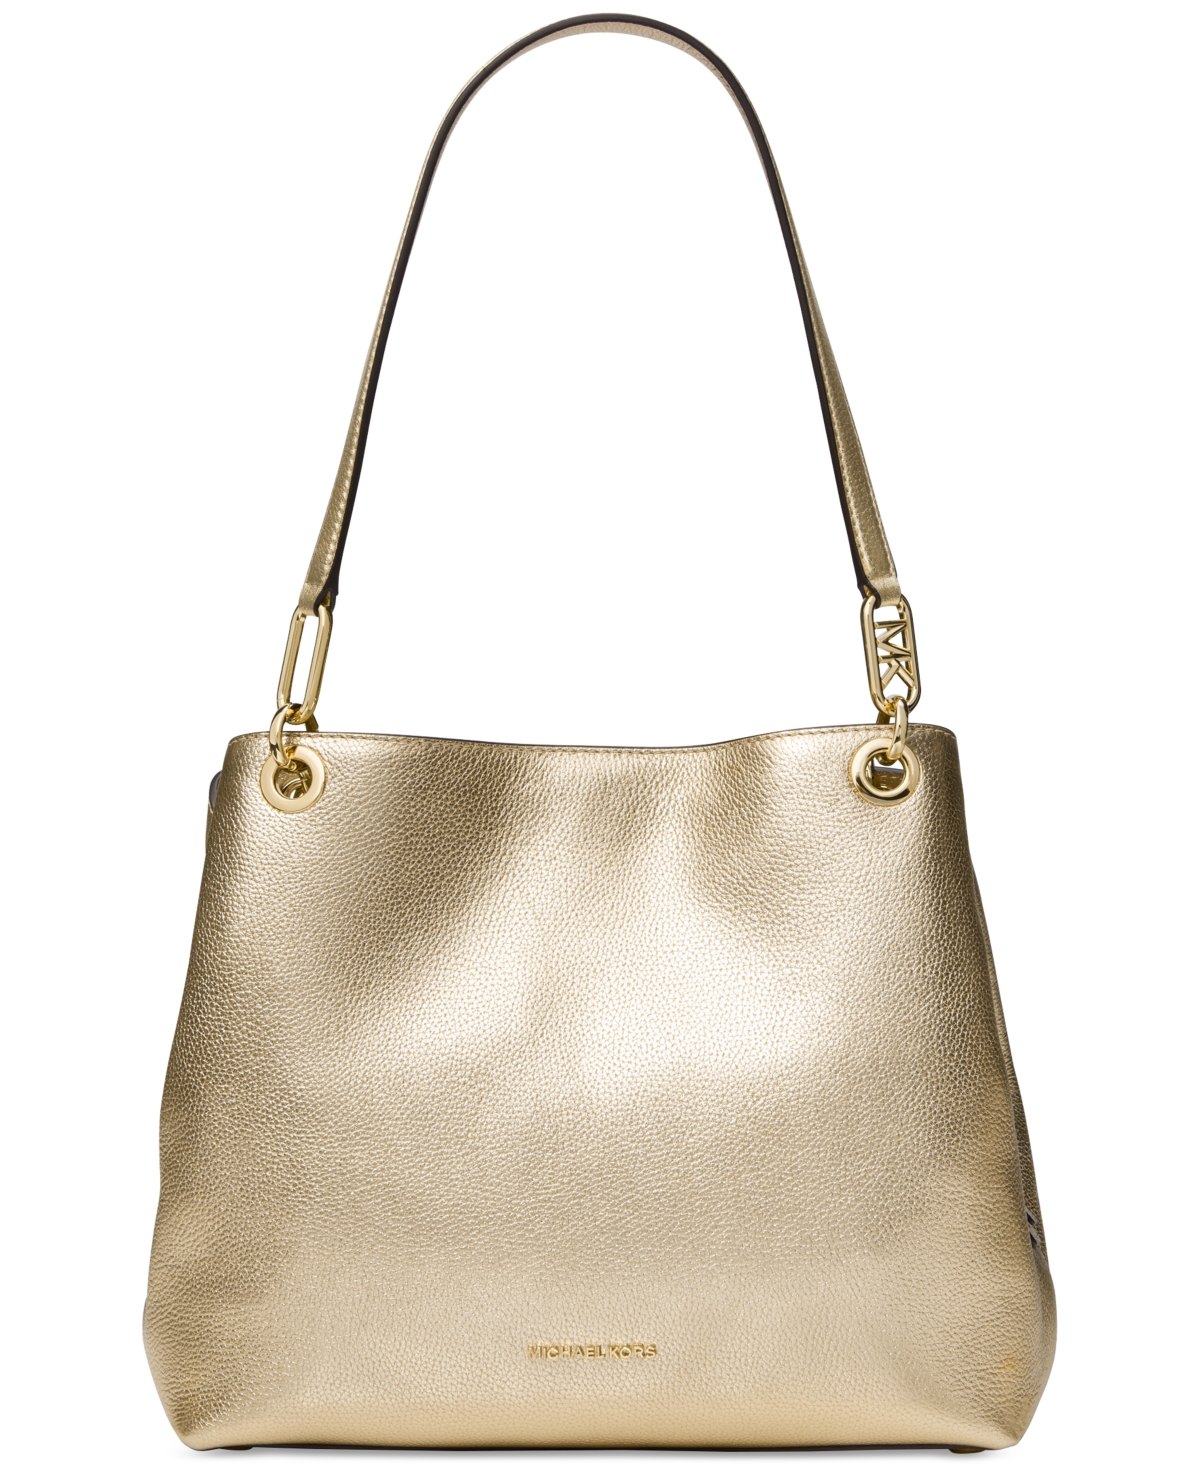 Michael Kors Bags | Michael Kors Large Double Zip Wallet Wristlet Pale Gold | Color: Gold | Size: Os | Soulmatrix's Closet